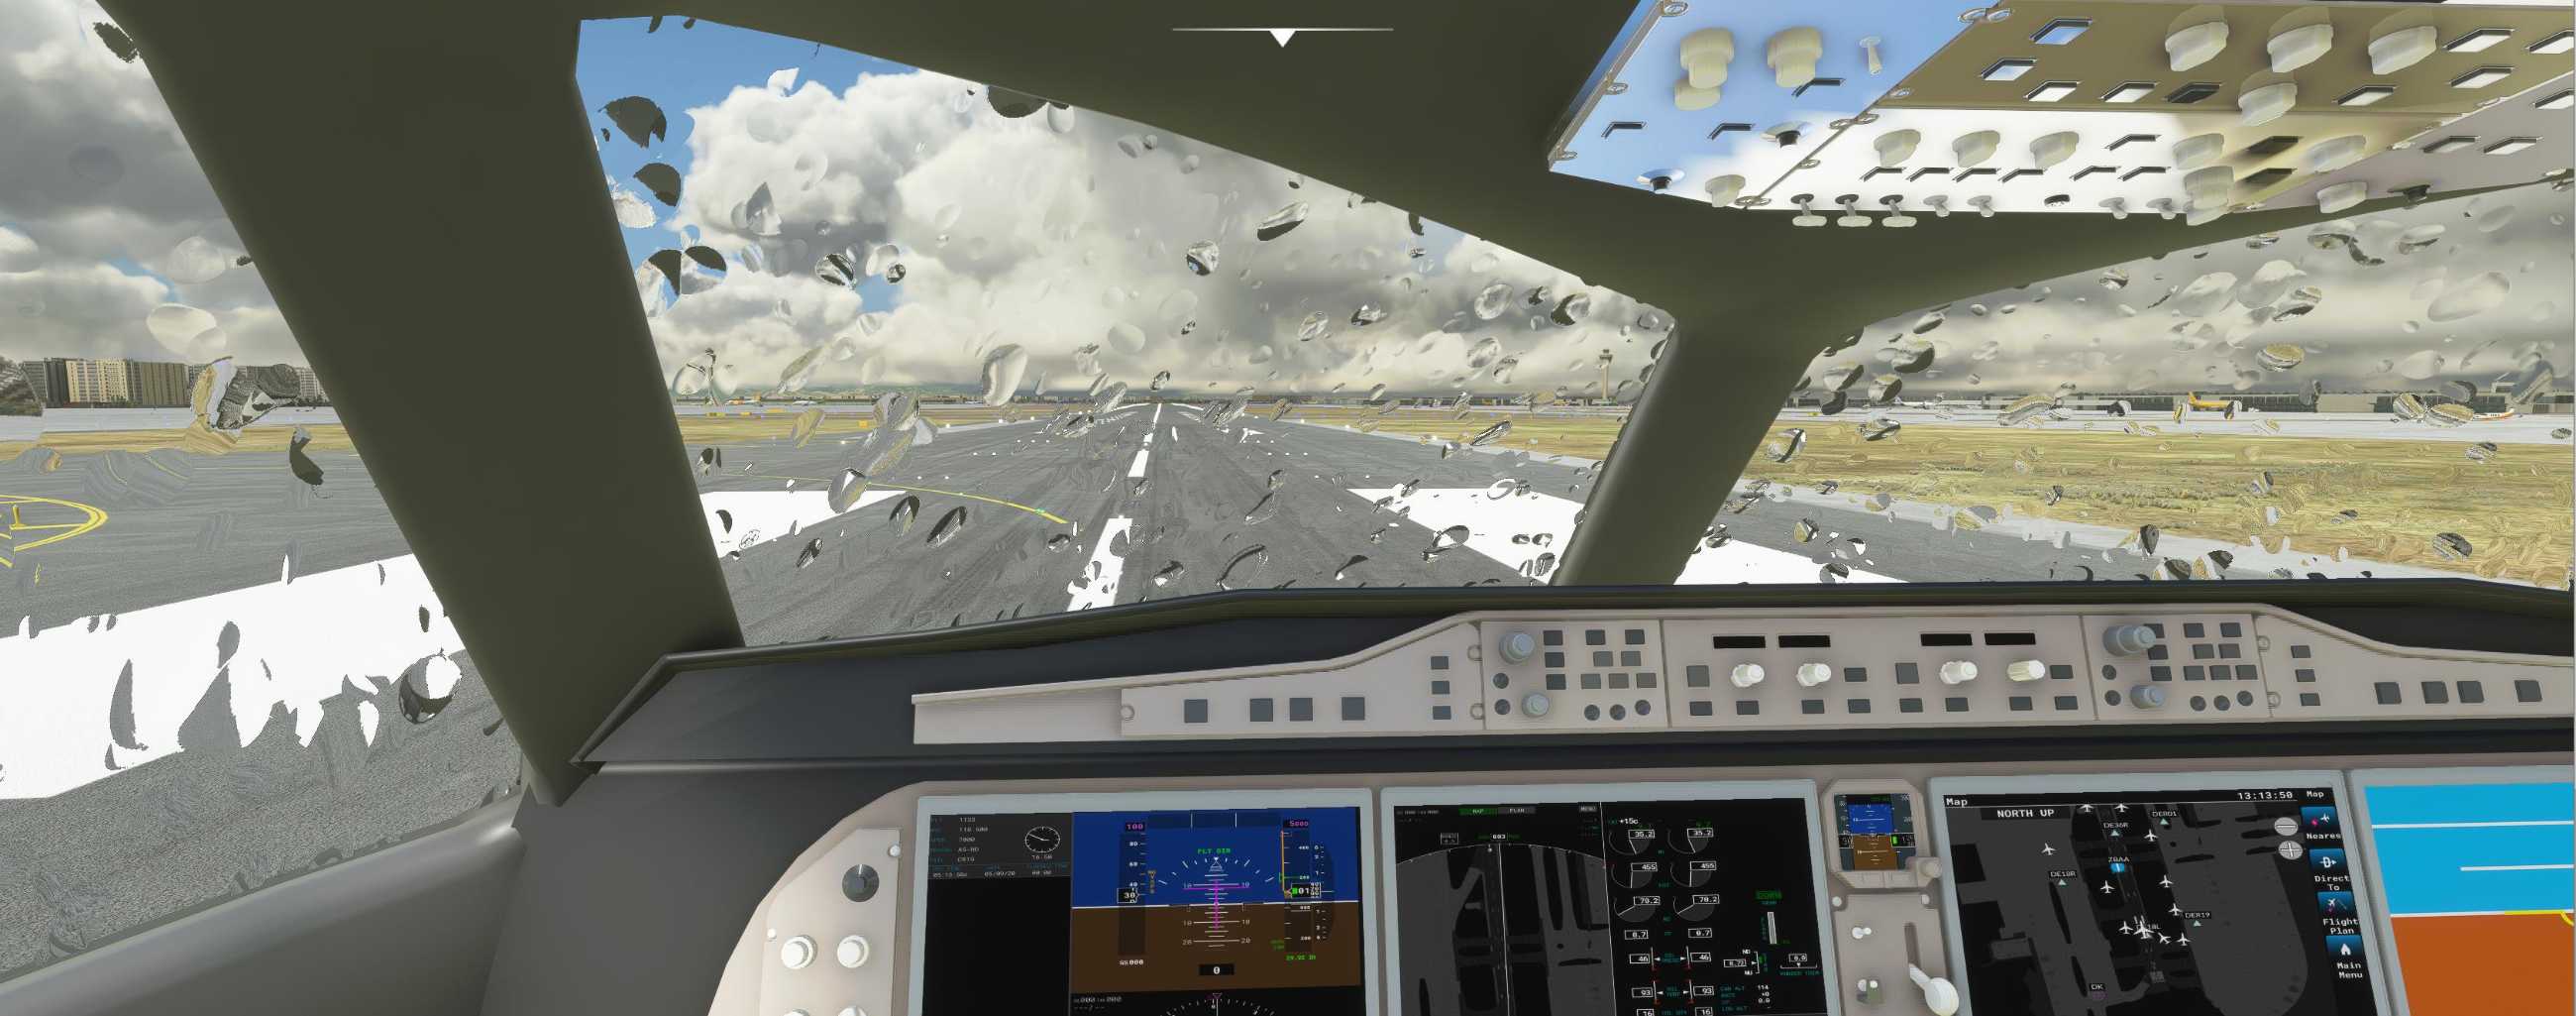 FYCYC-C919 国产大飞机机模 微软模拟飞行演示-8076 